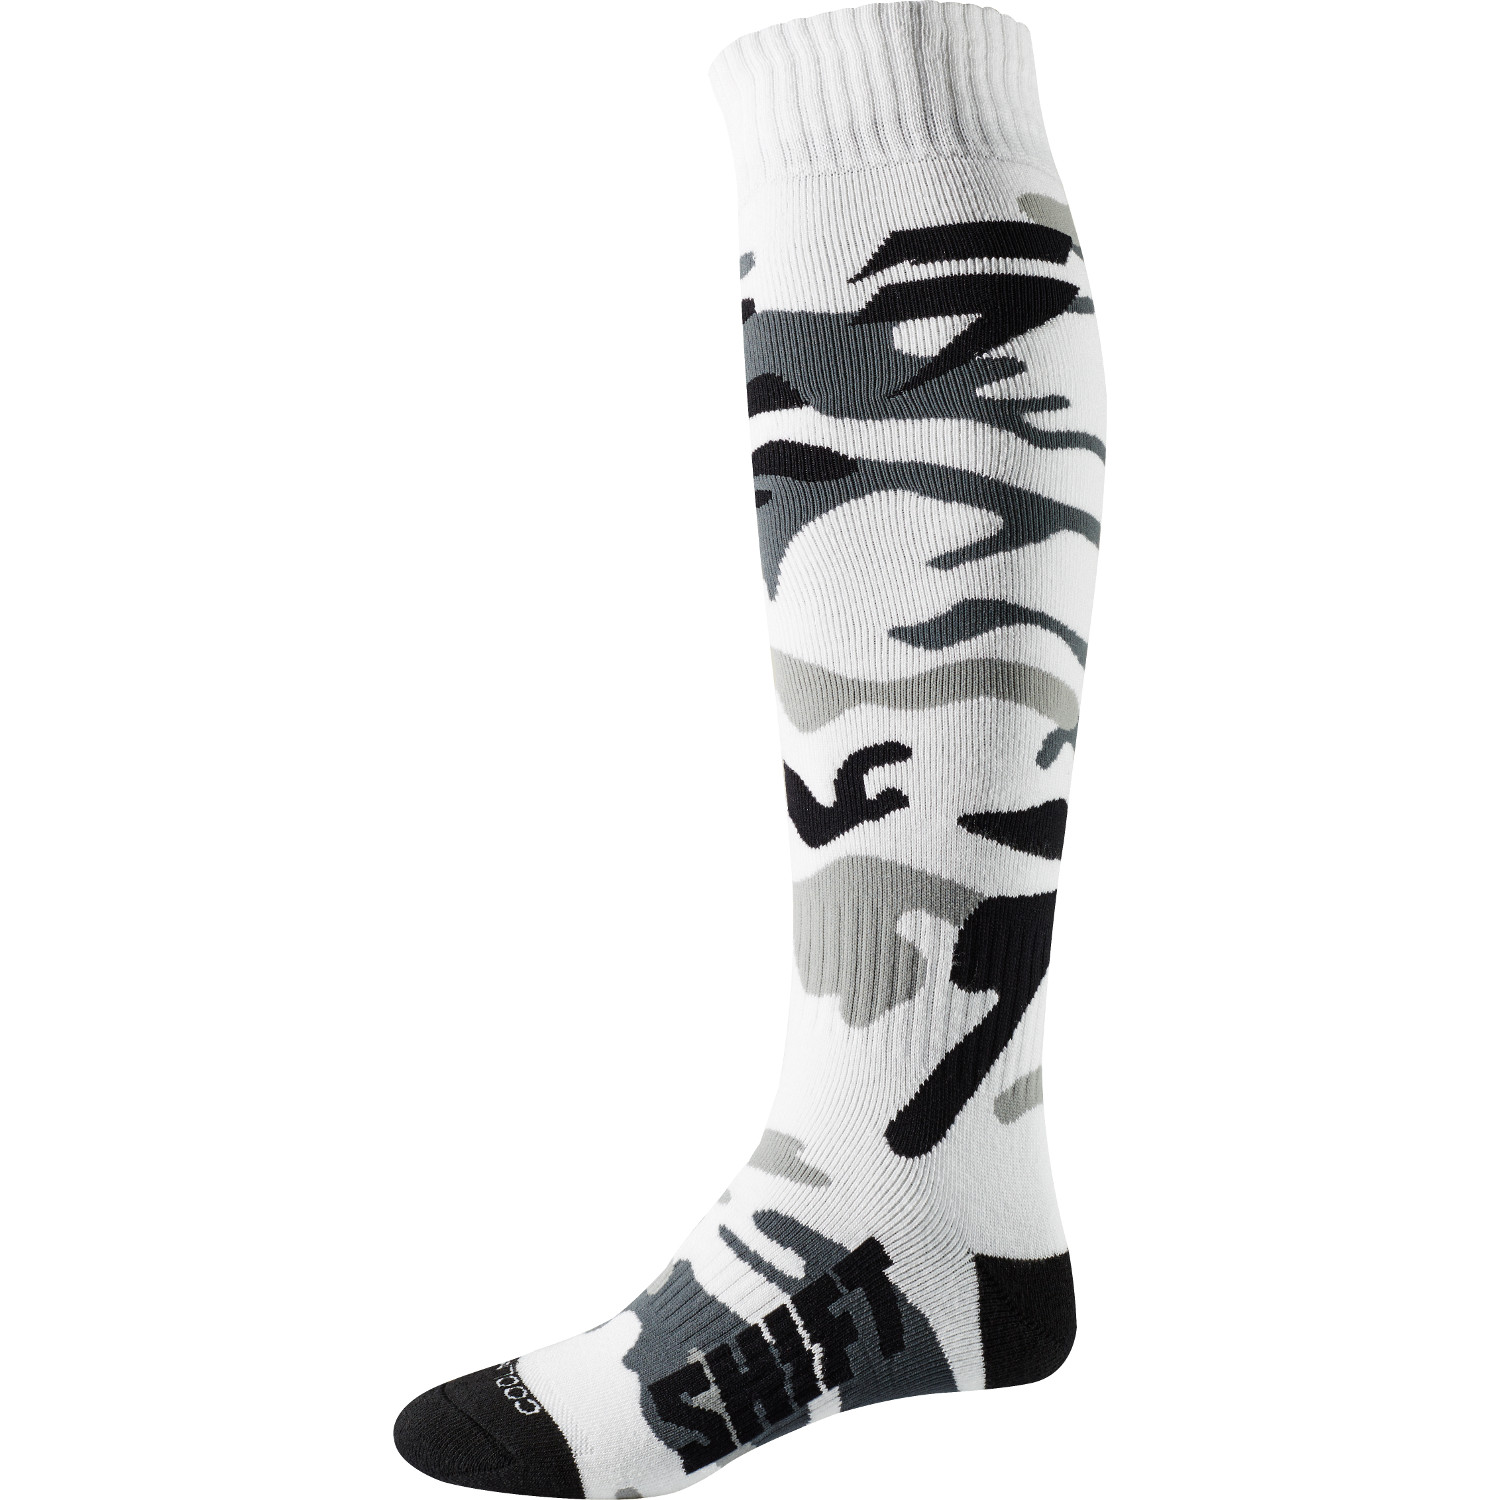 Shift Socks Whit3 Label White/Camo